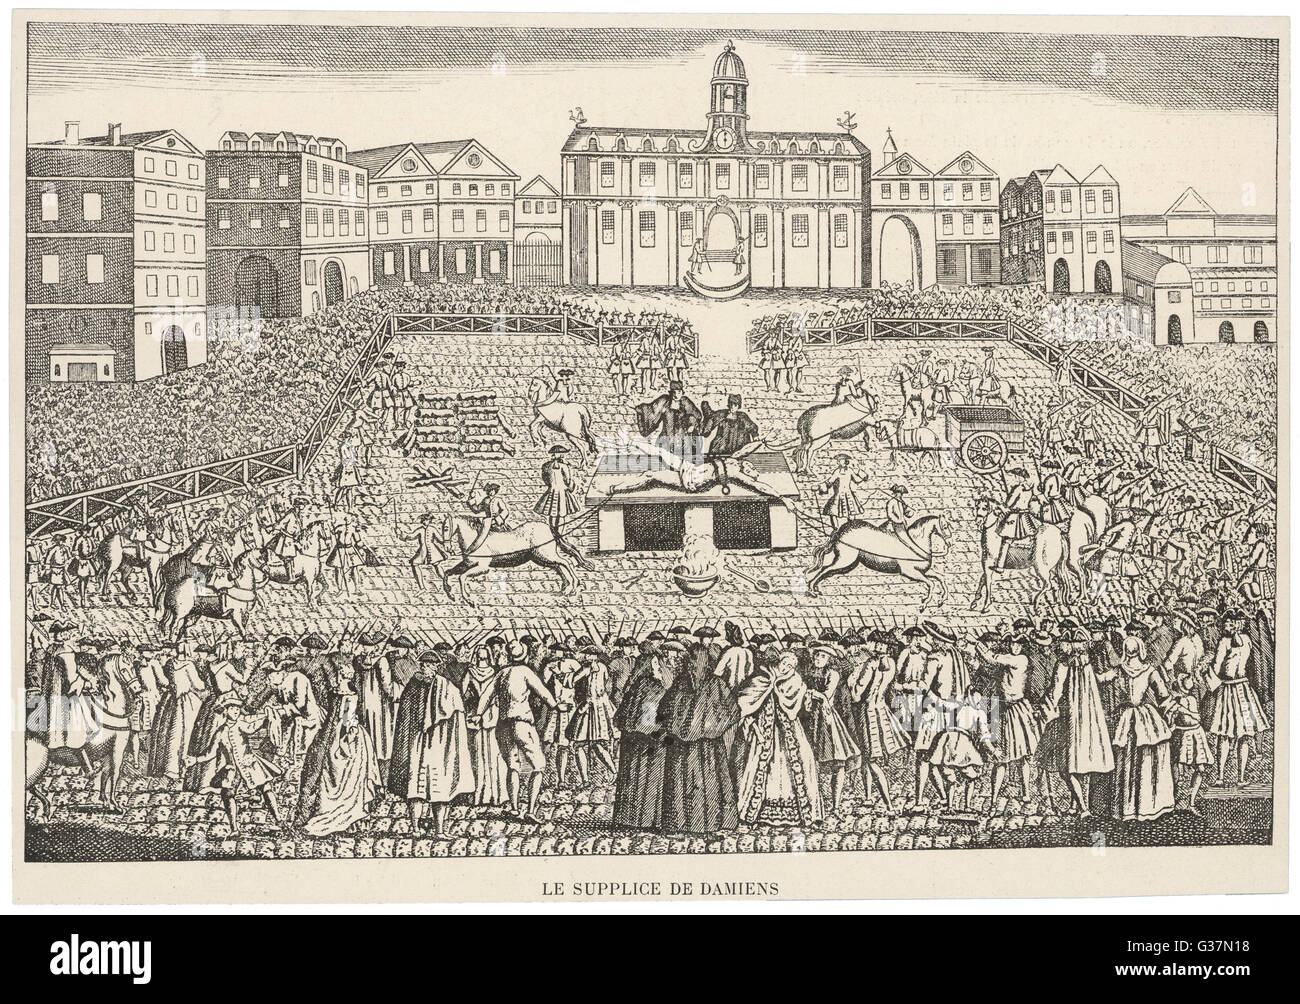 Esecuzione pubblica di Robert-Francois Damiens, potrebbe essere assassino di Luigi XV, da "casernement'. Data: 1757 Foto Stock